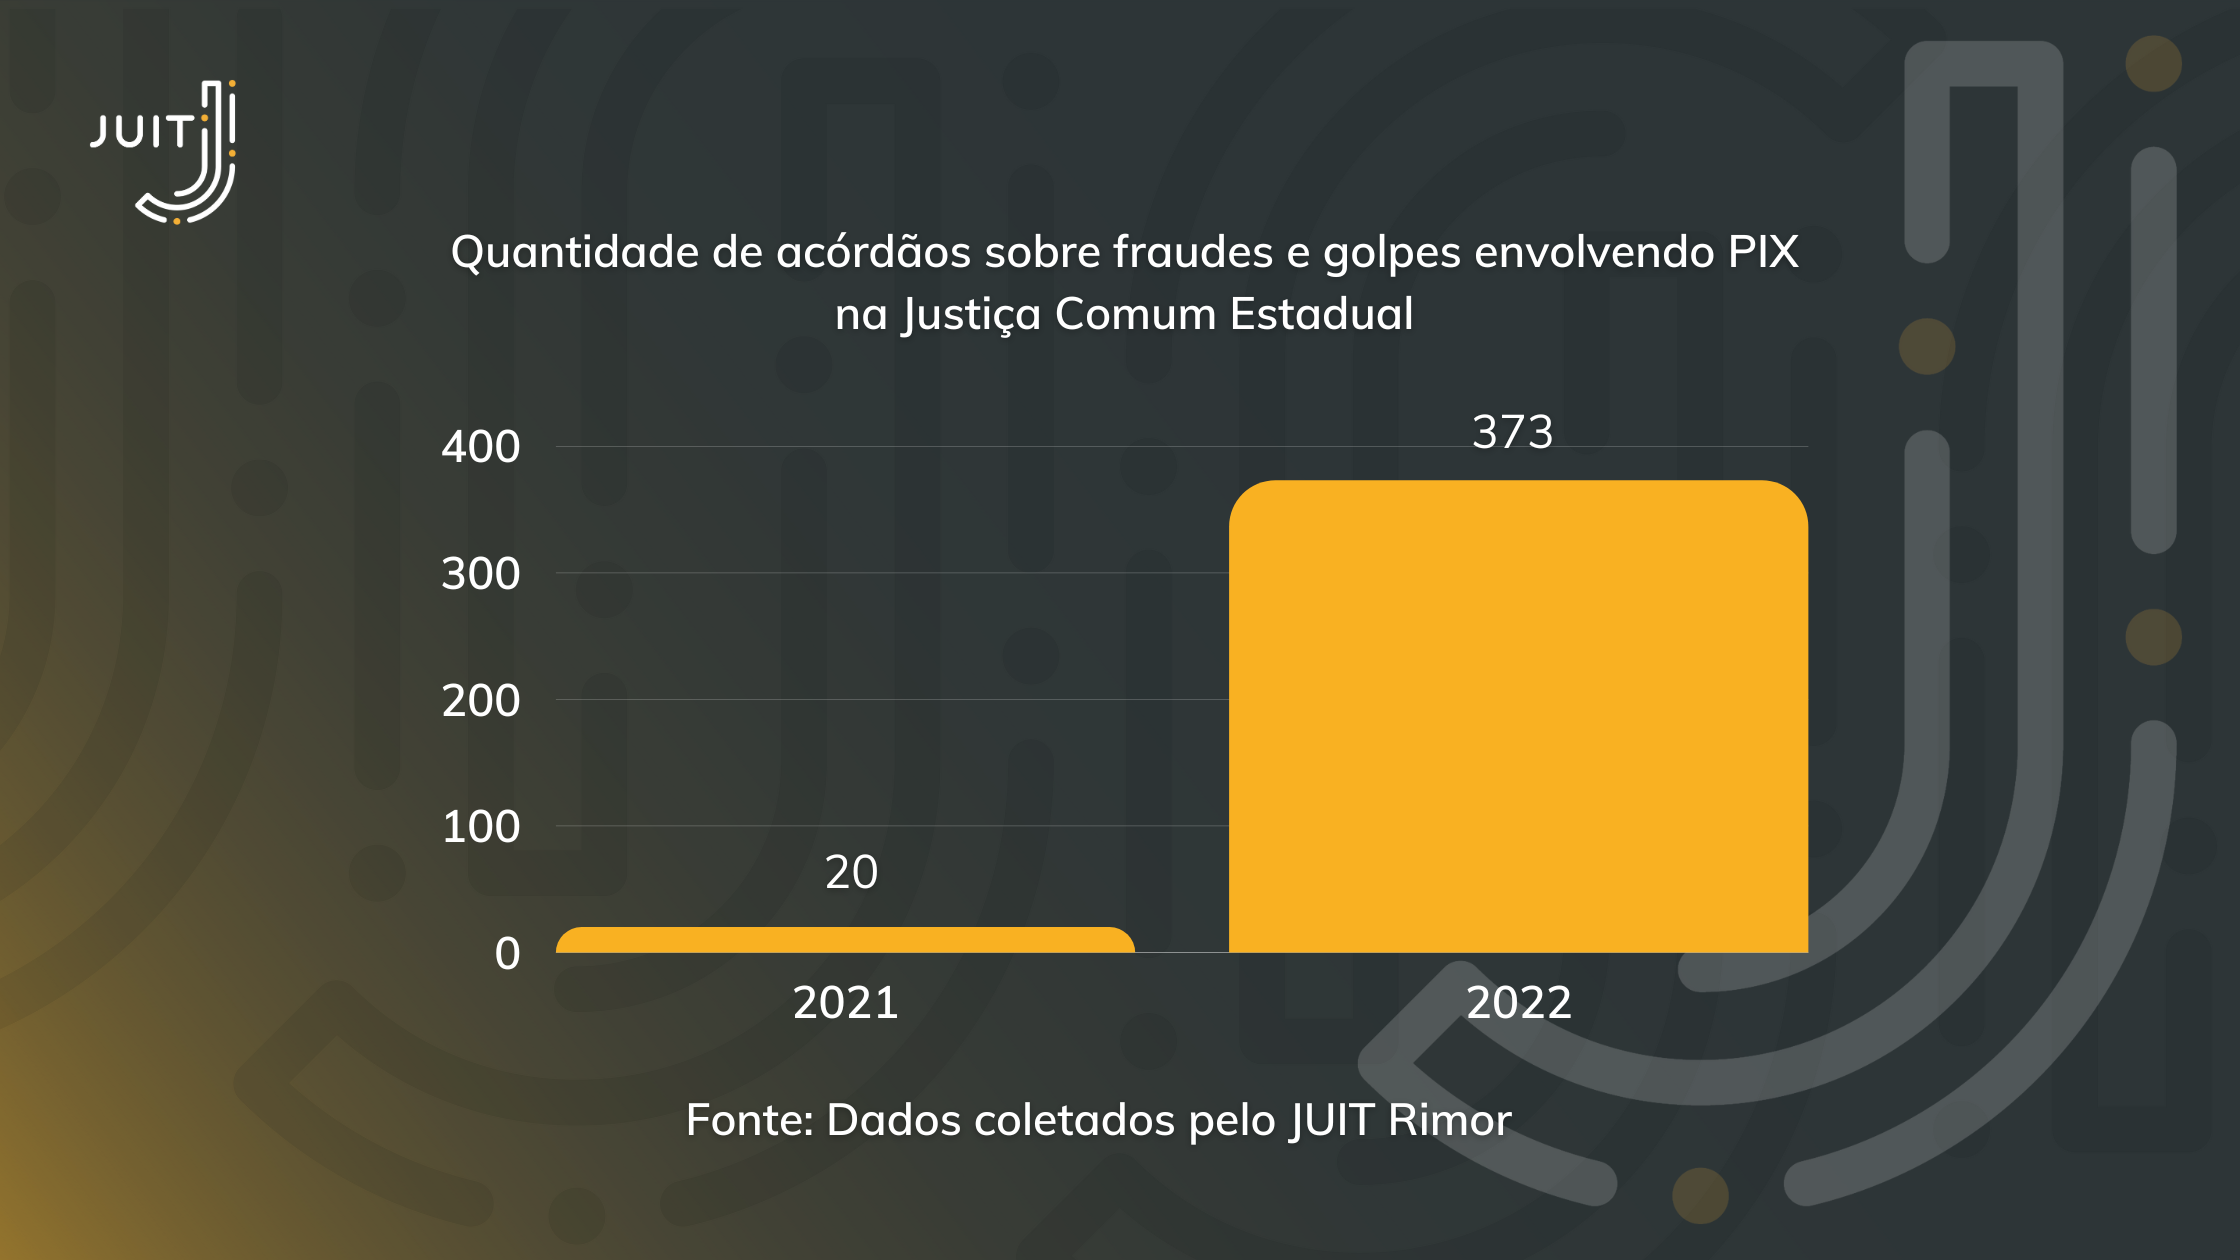 Distribuição dos acórdãos sobre PIX na Justiça Comum Estadual nos anos de 2021 e 2022